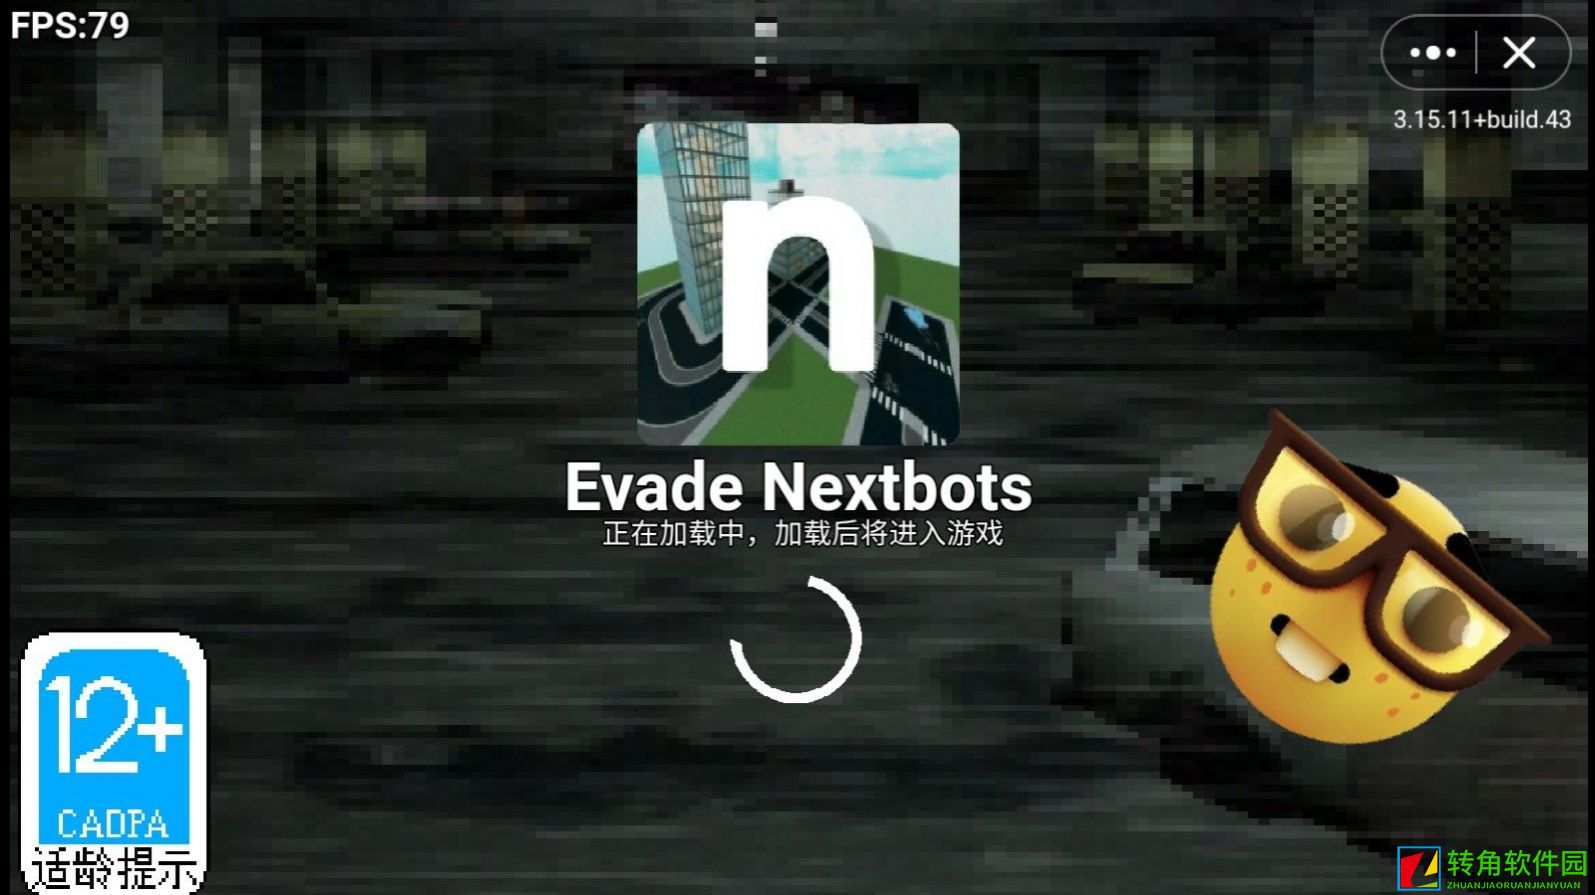 Evade Nextbots